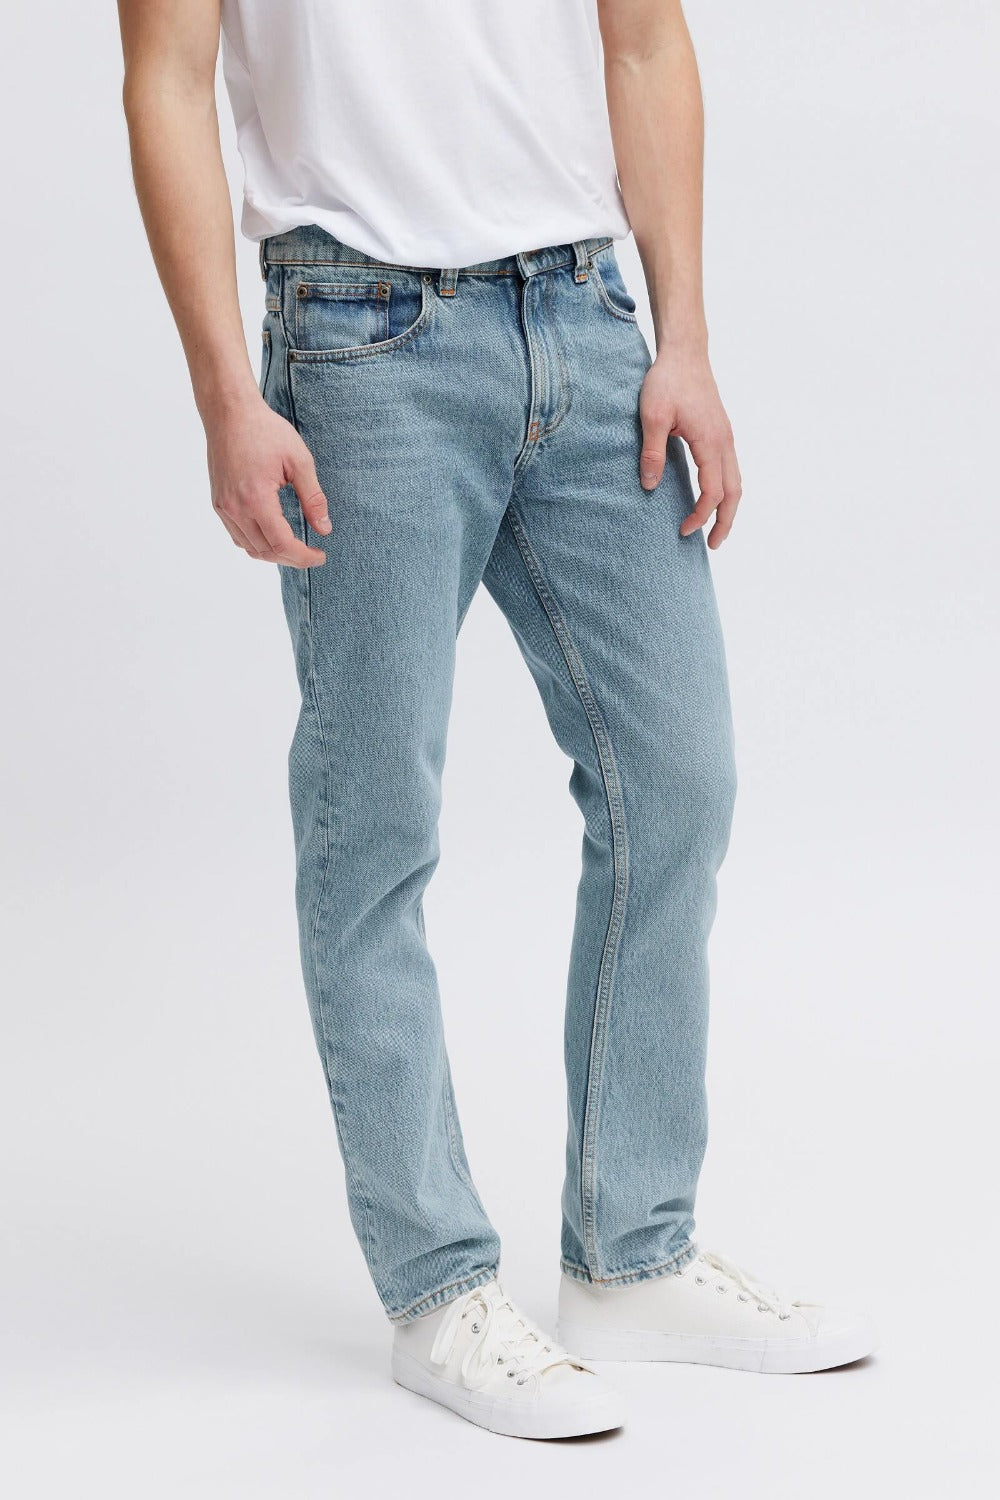 Lease Men's Jeans